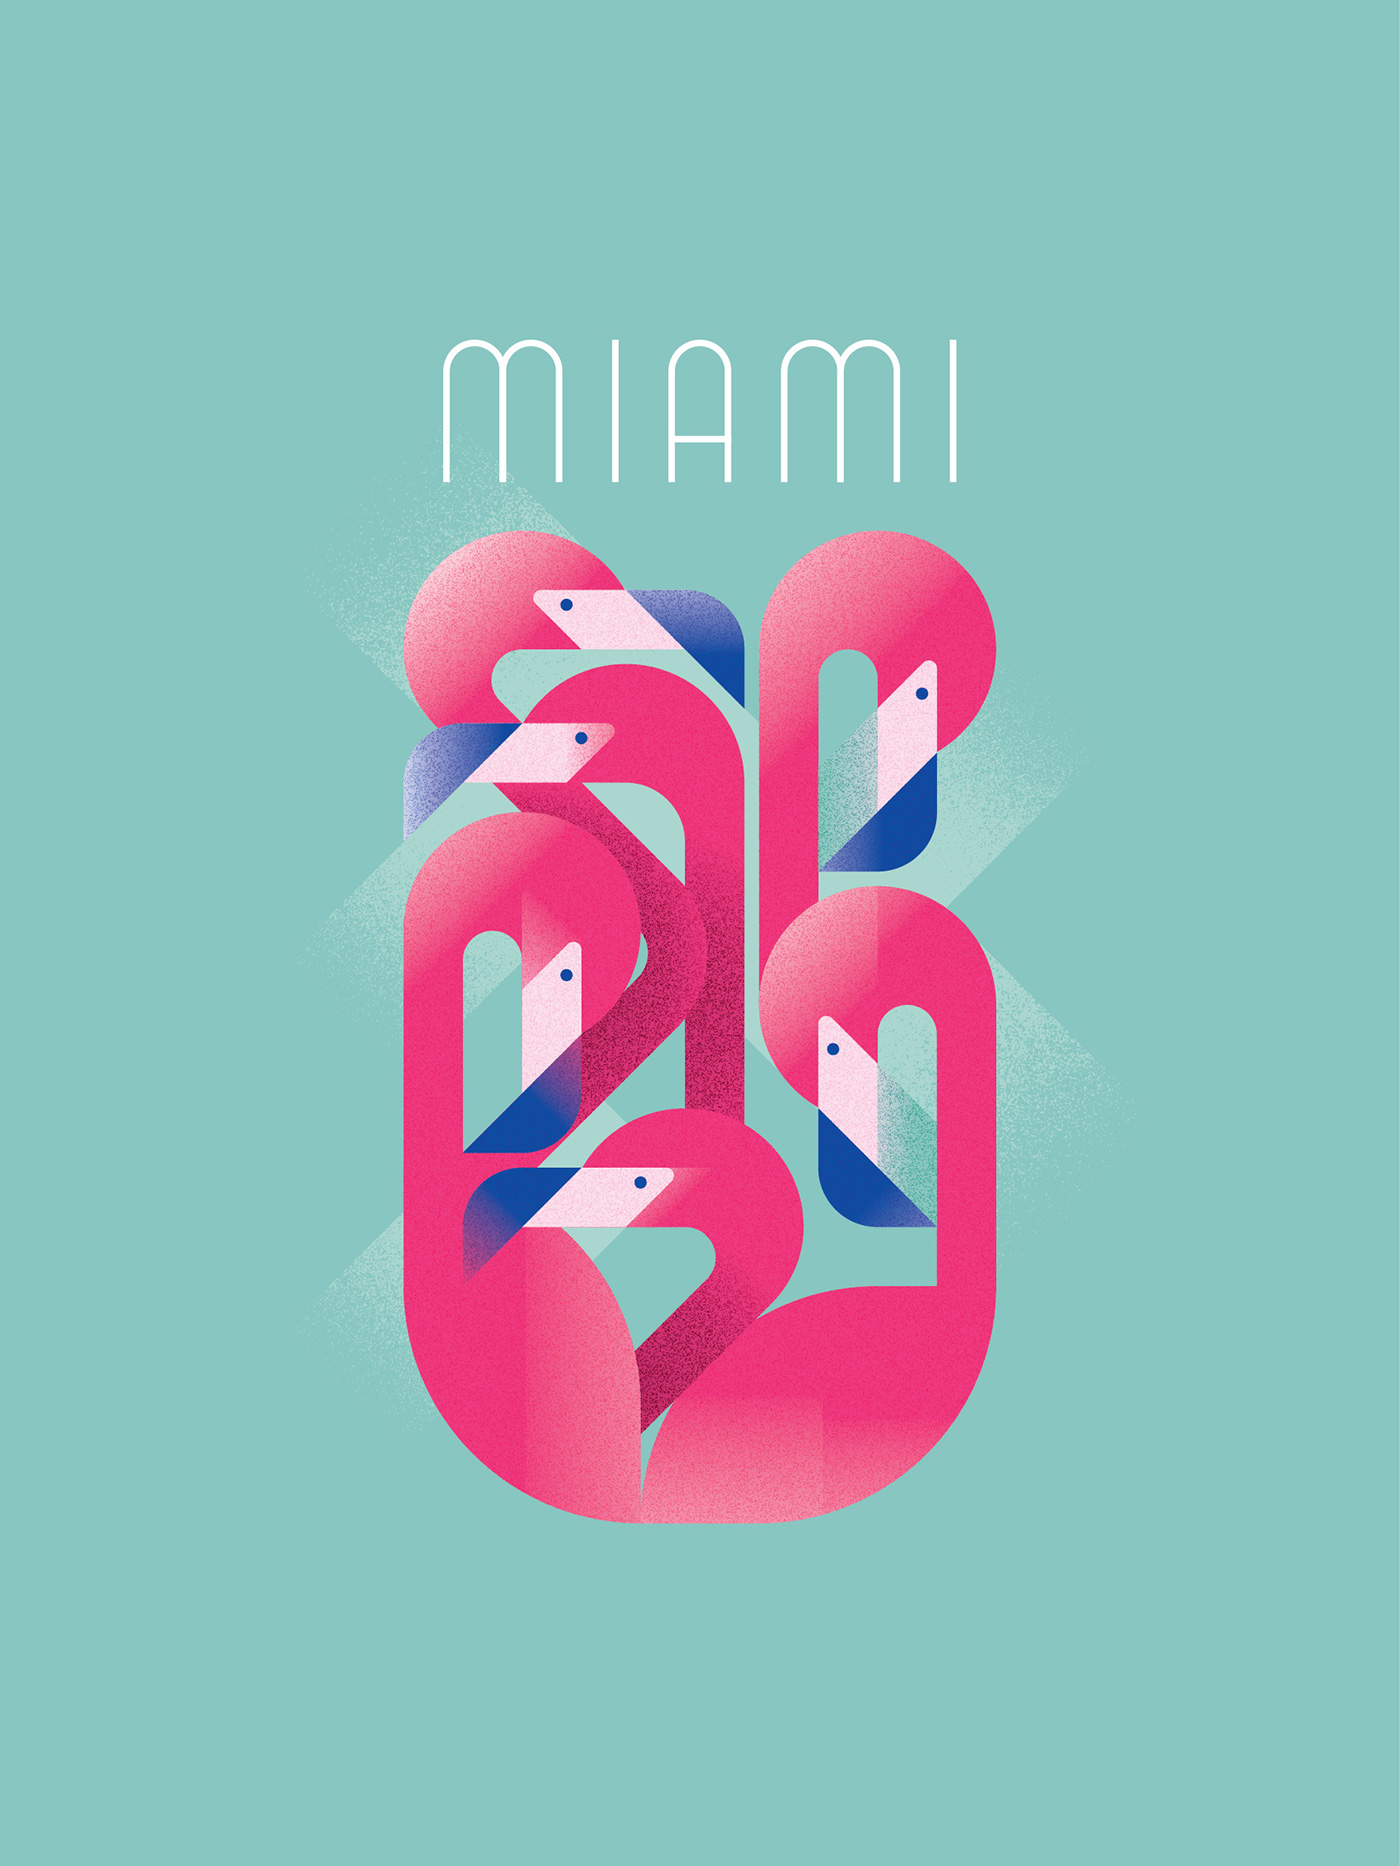 miami beach south flamingo birds outline art deco Style t-shirt Retro